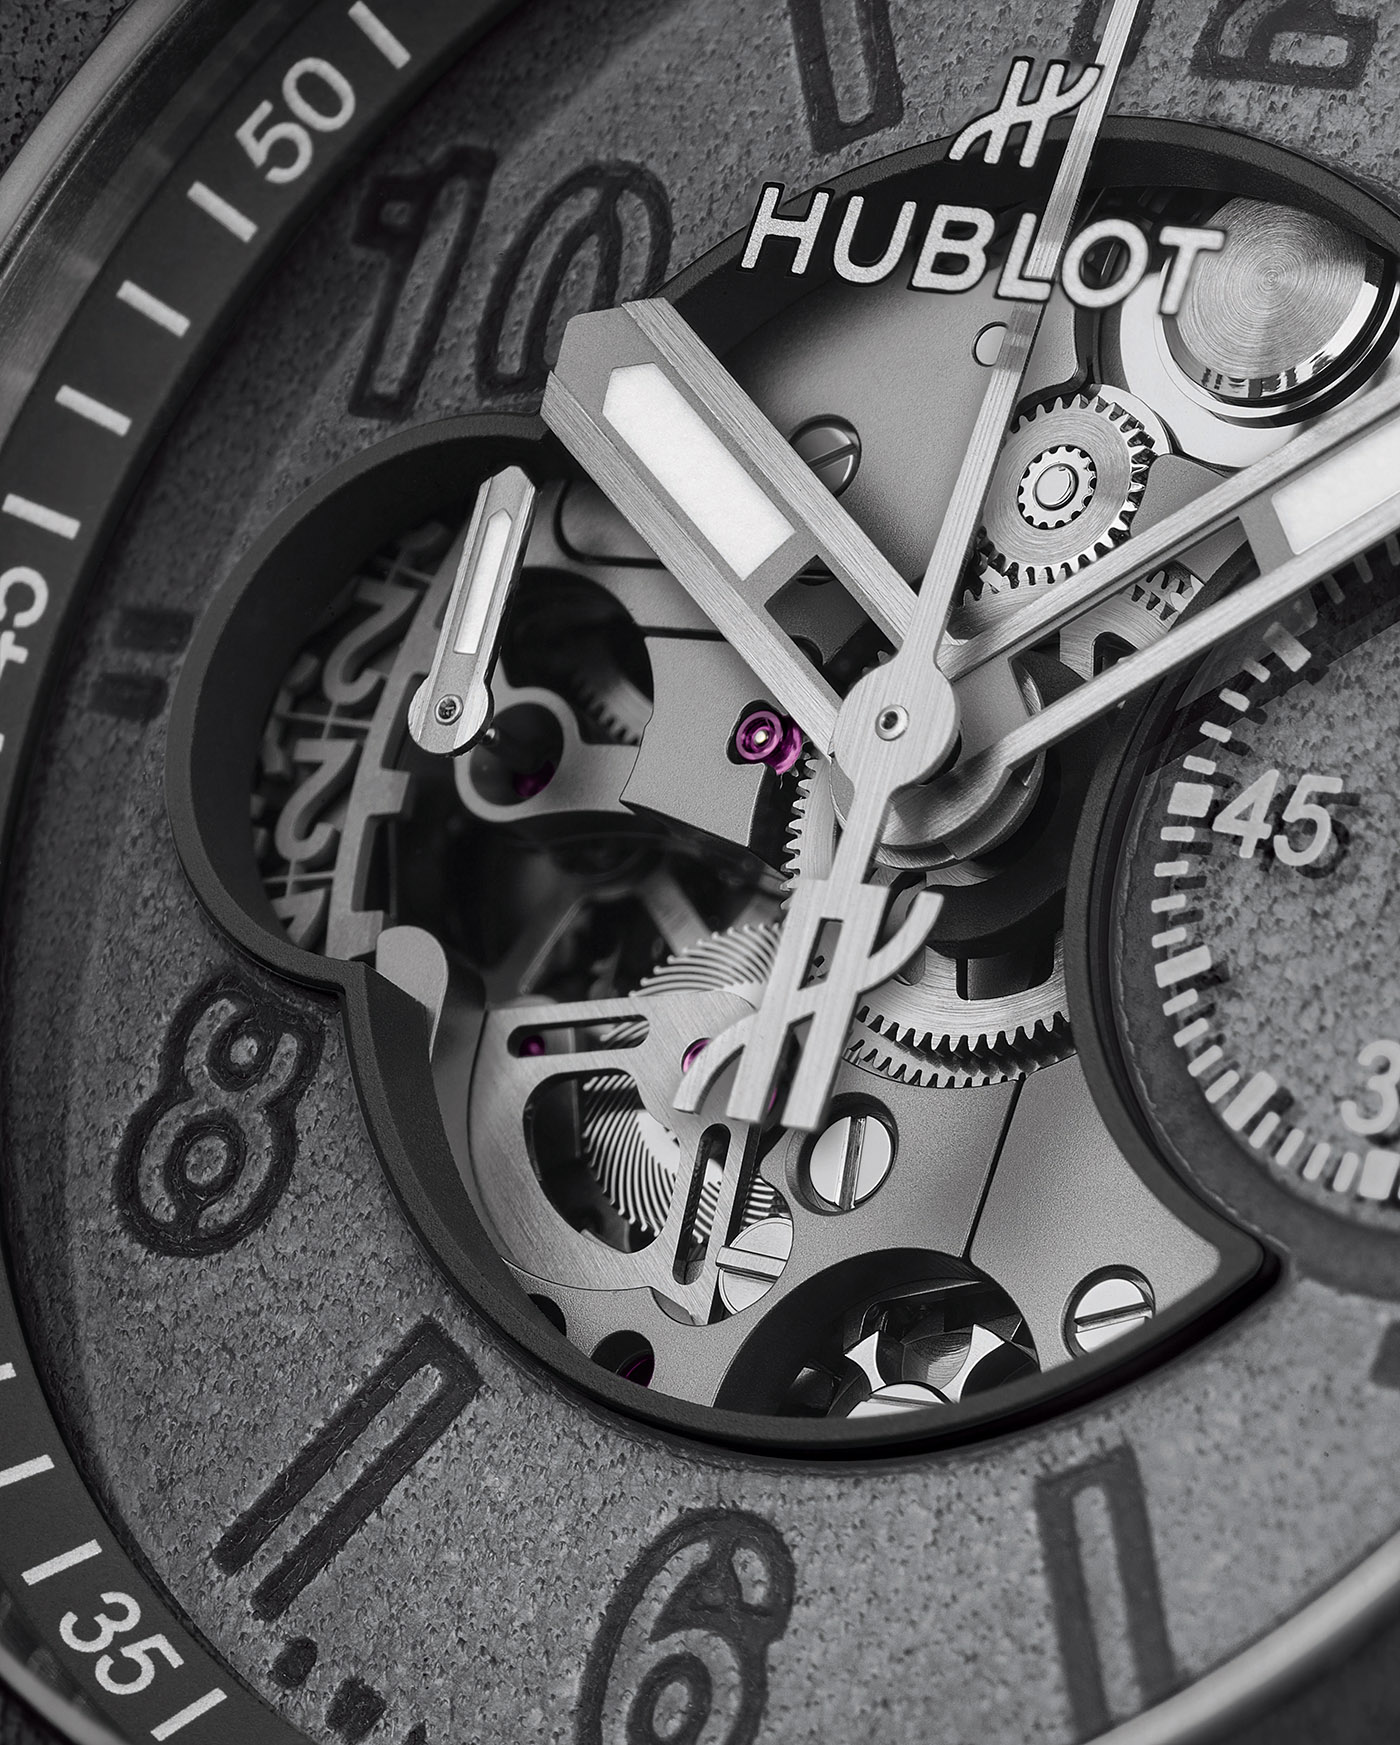 Hublot выпускает ограниченную серию часов Big Bang Unico Berluti Aluminio